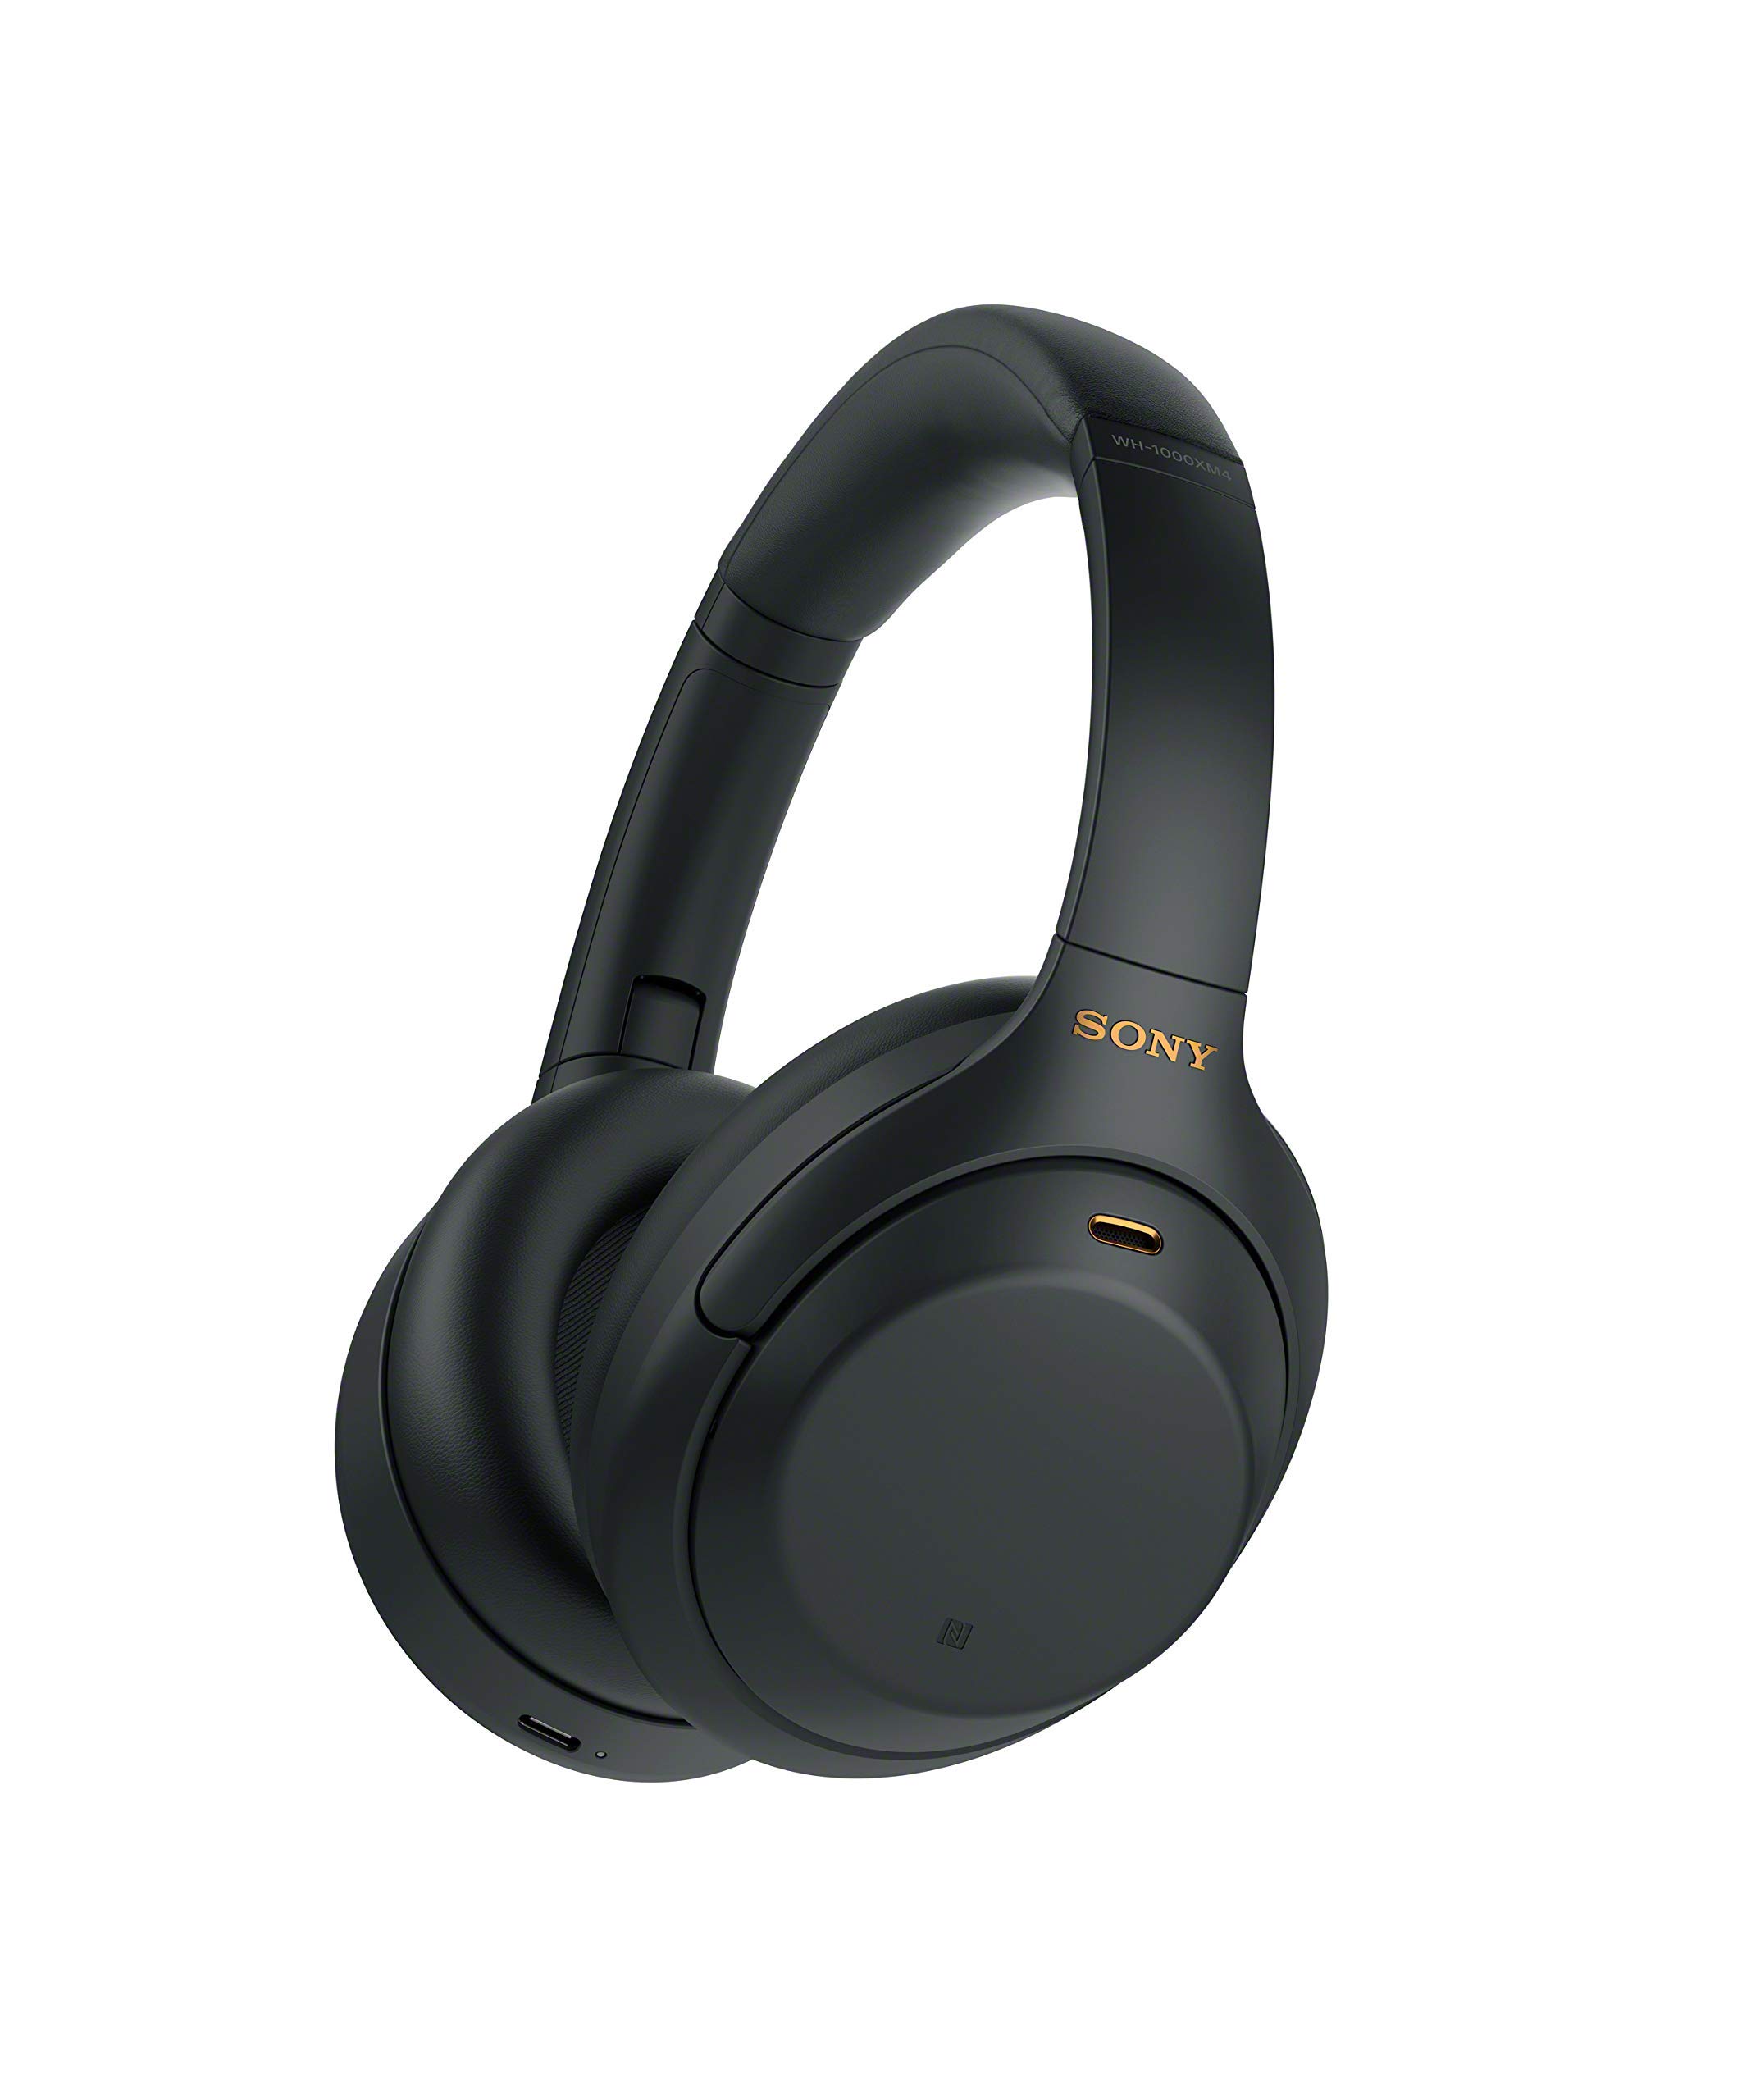 Sony Bezprzewodowe słuchawki nagłowne z redukcją szumów WH-1000XM4 – czarne (odnowione)